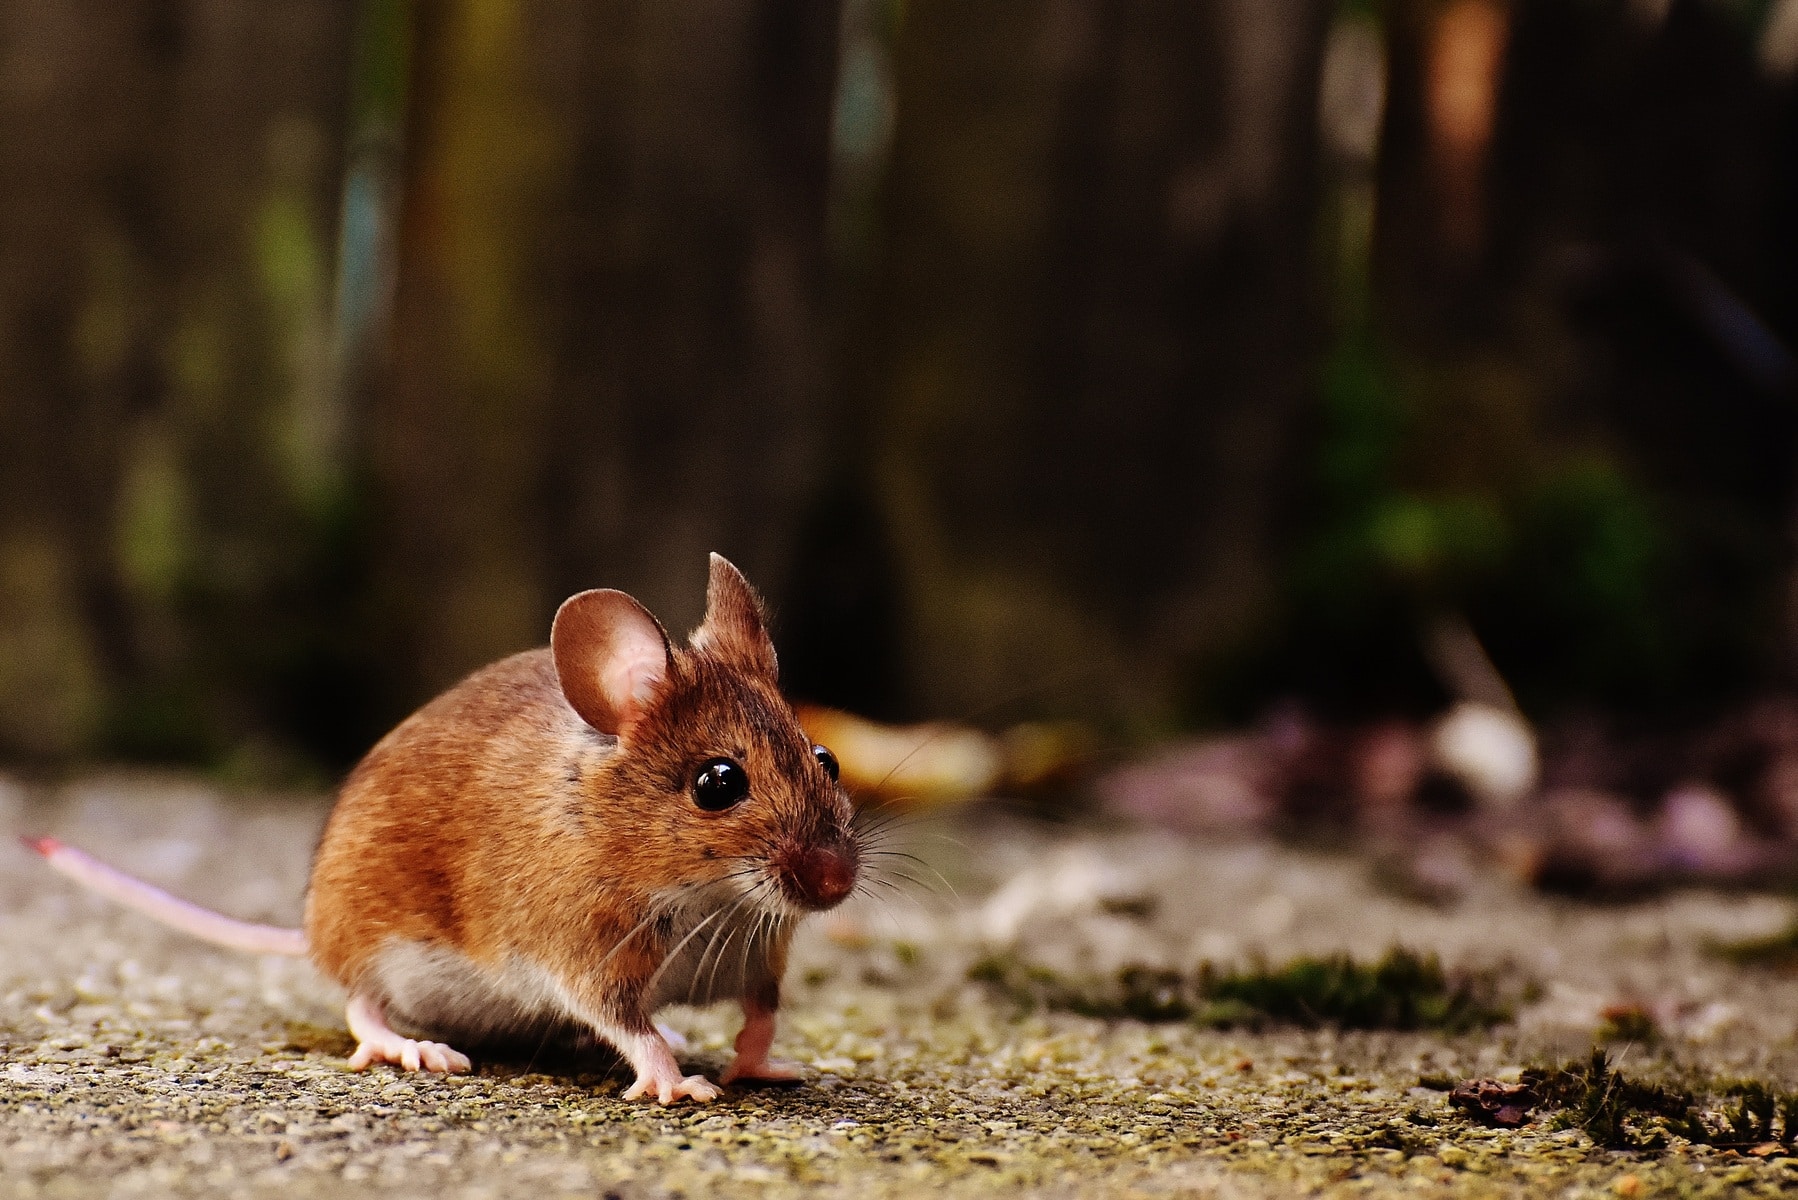 Конечности и наружные половые органы мышей происходят от общего зачатка